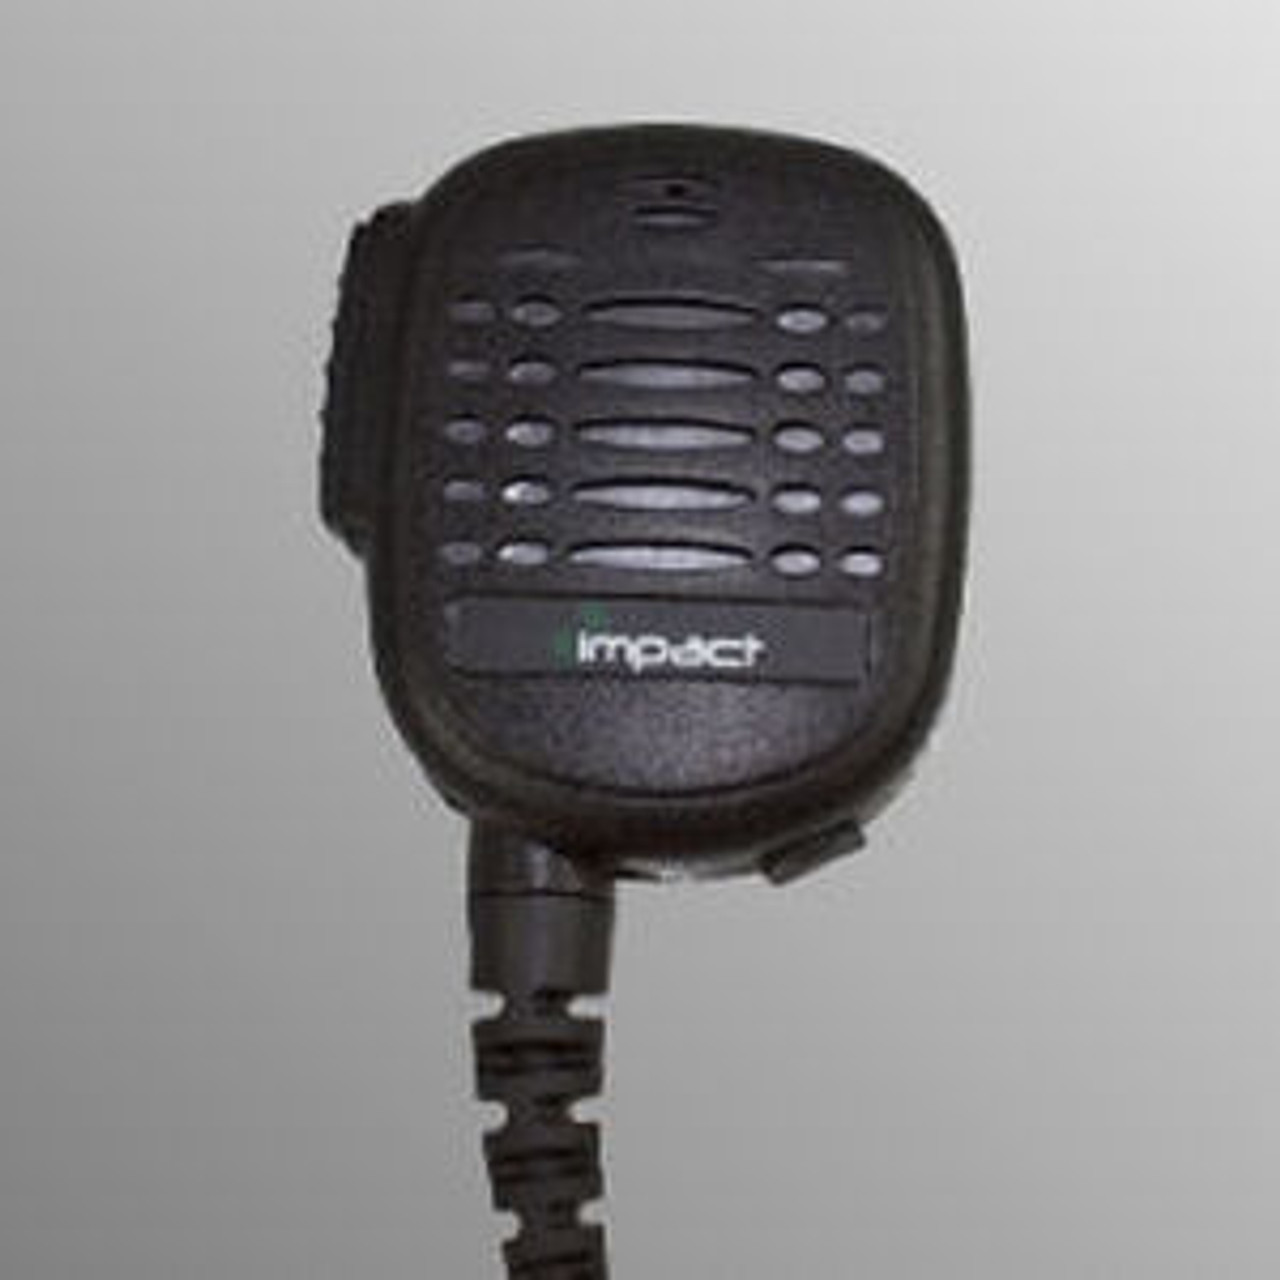 Motorola MTX9250 Noise Canceling Speaker Mic.